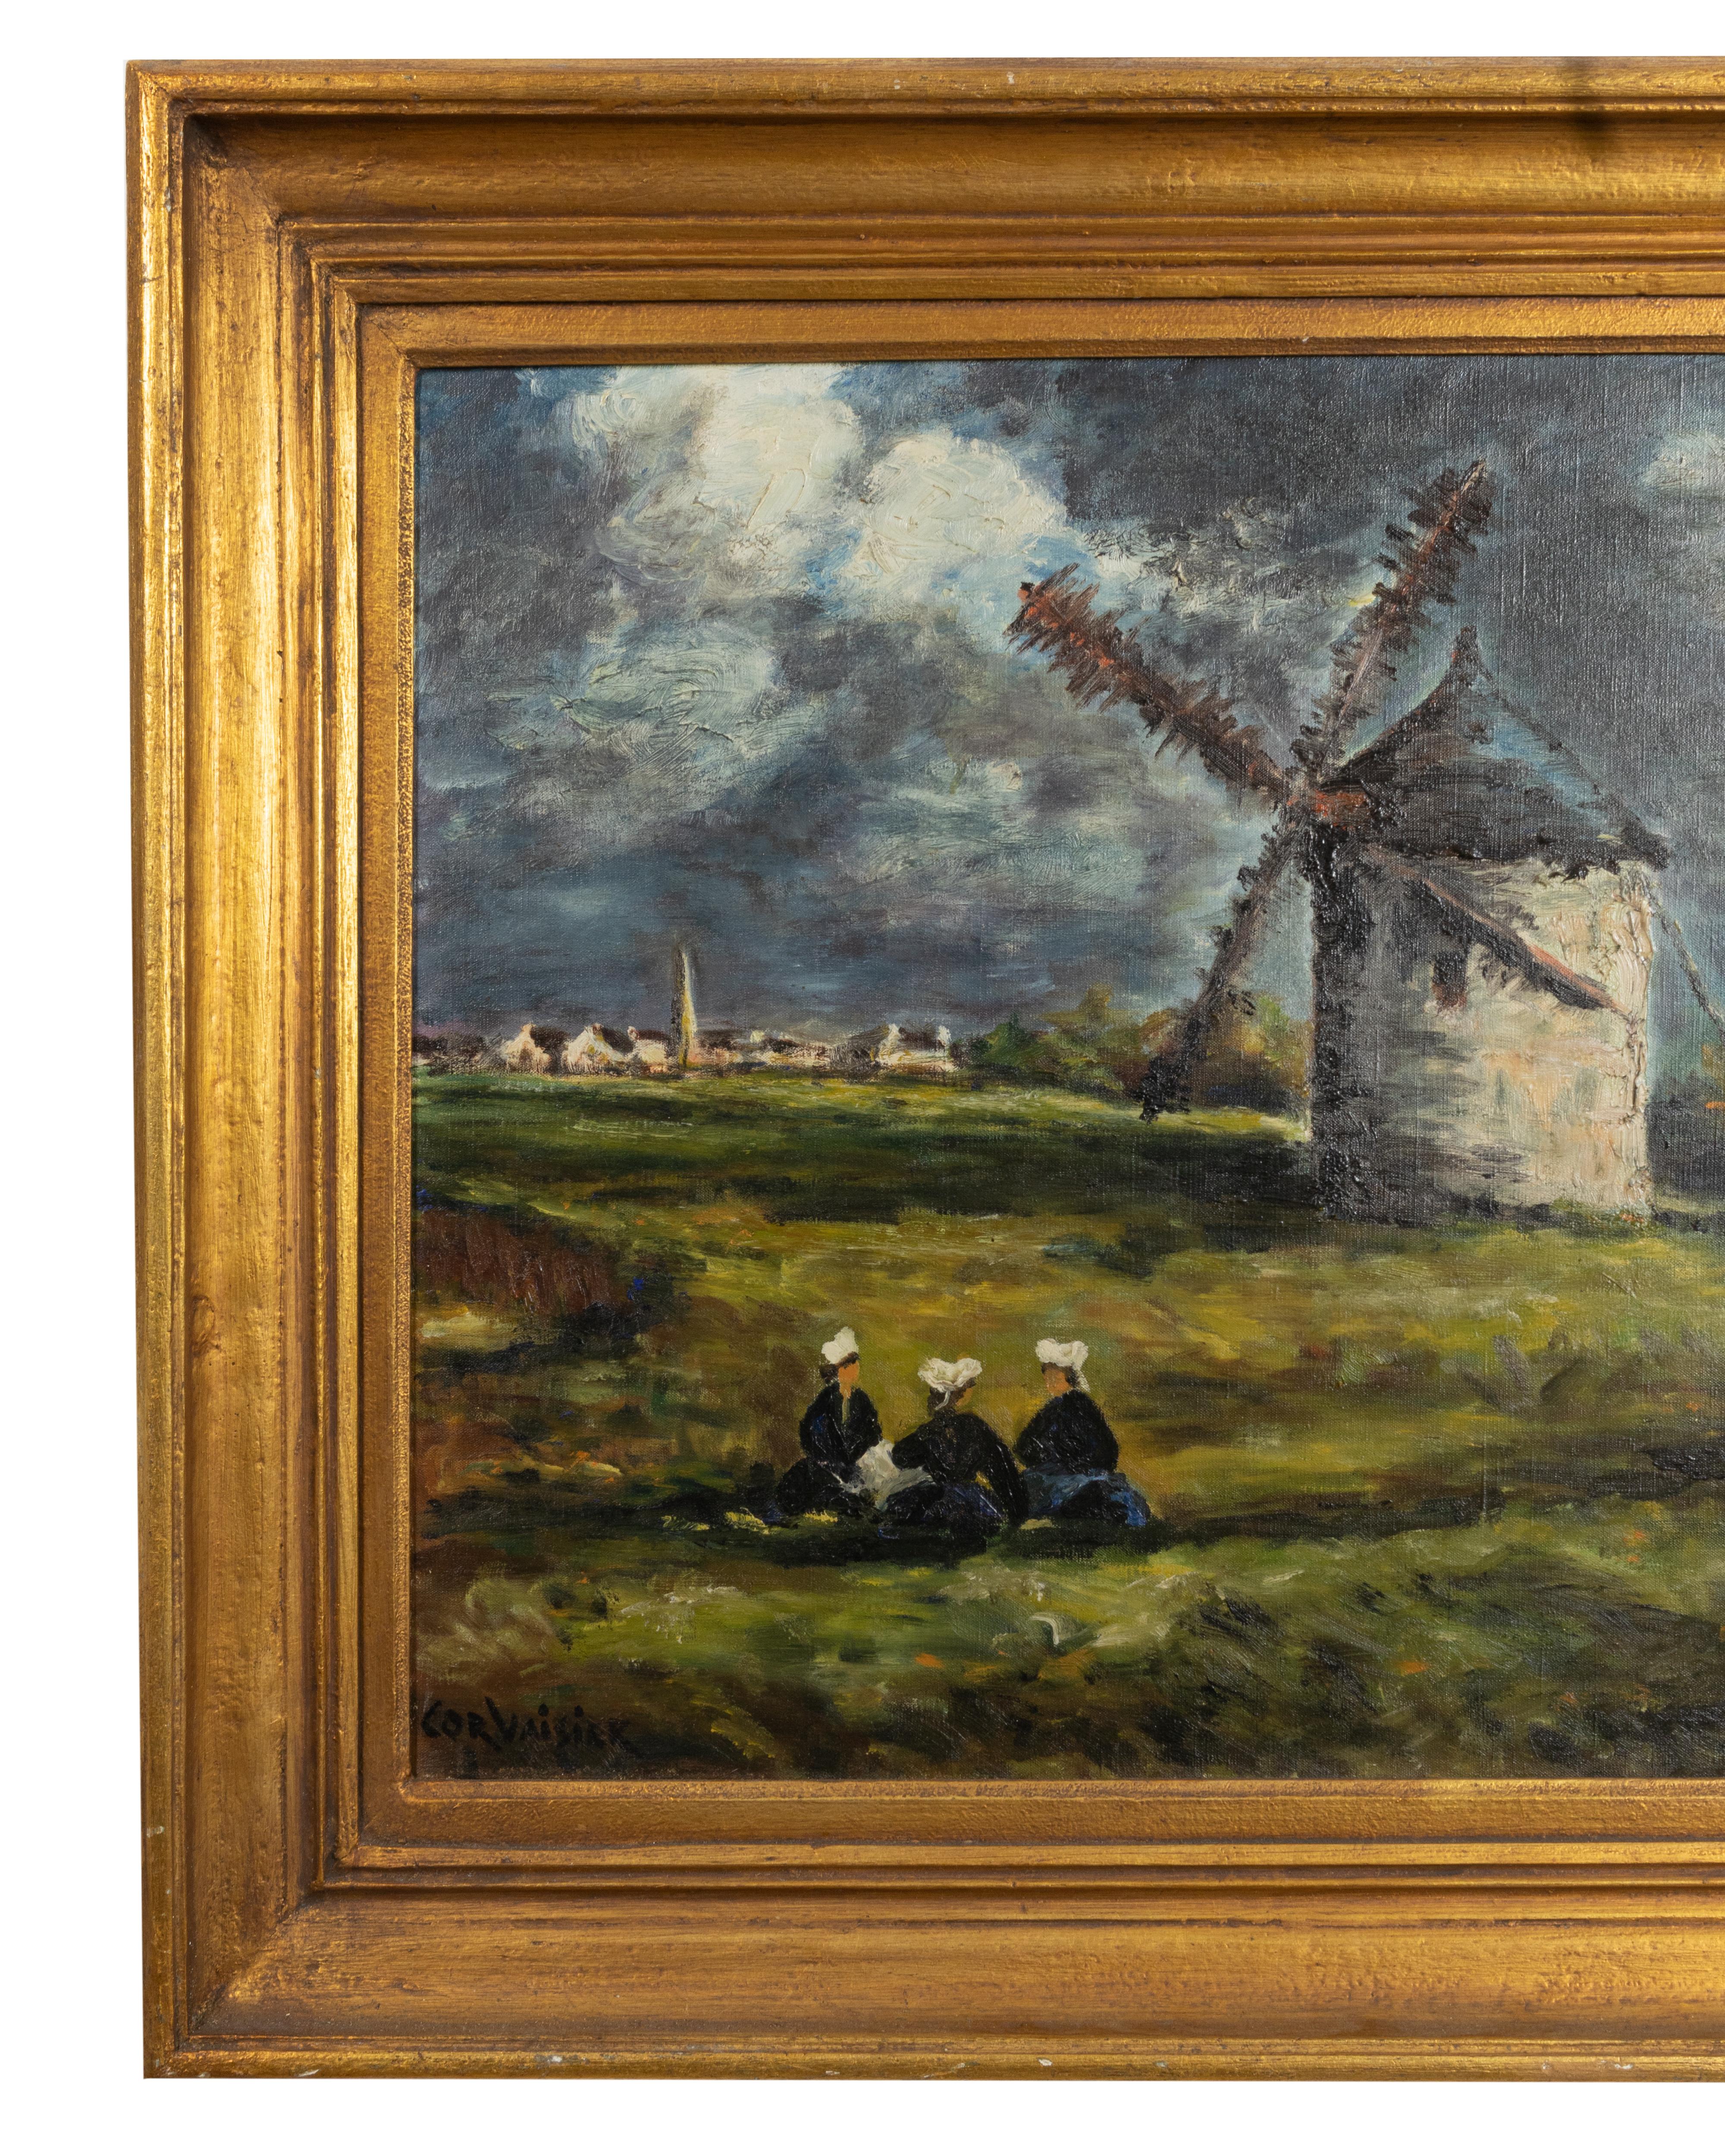 Cette peinture visuellement frappante, exécutée dans le style de l'école de Barbizon, dépeint une scène de campagne sereine où trois femmes cherchent refuge sous un moulin à vent pittoresque. Au loin, un village pittoresque et le clocher d'une